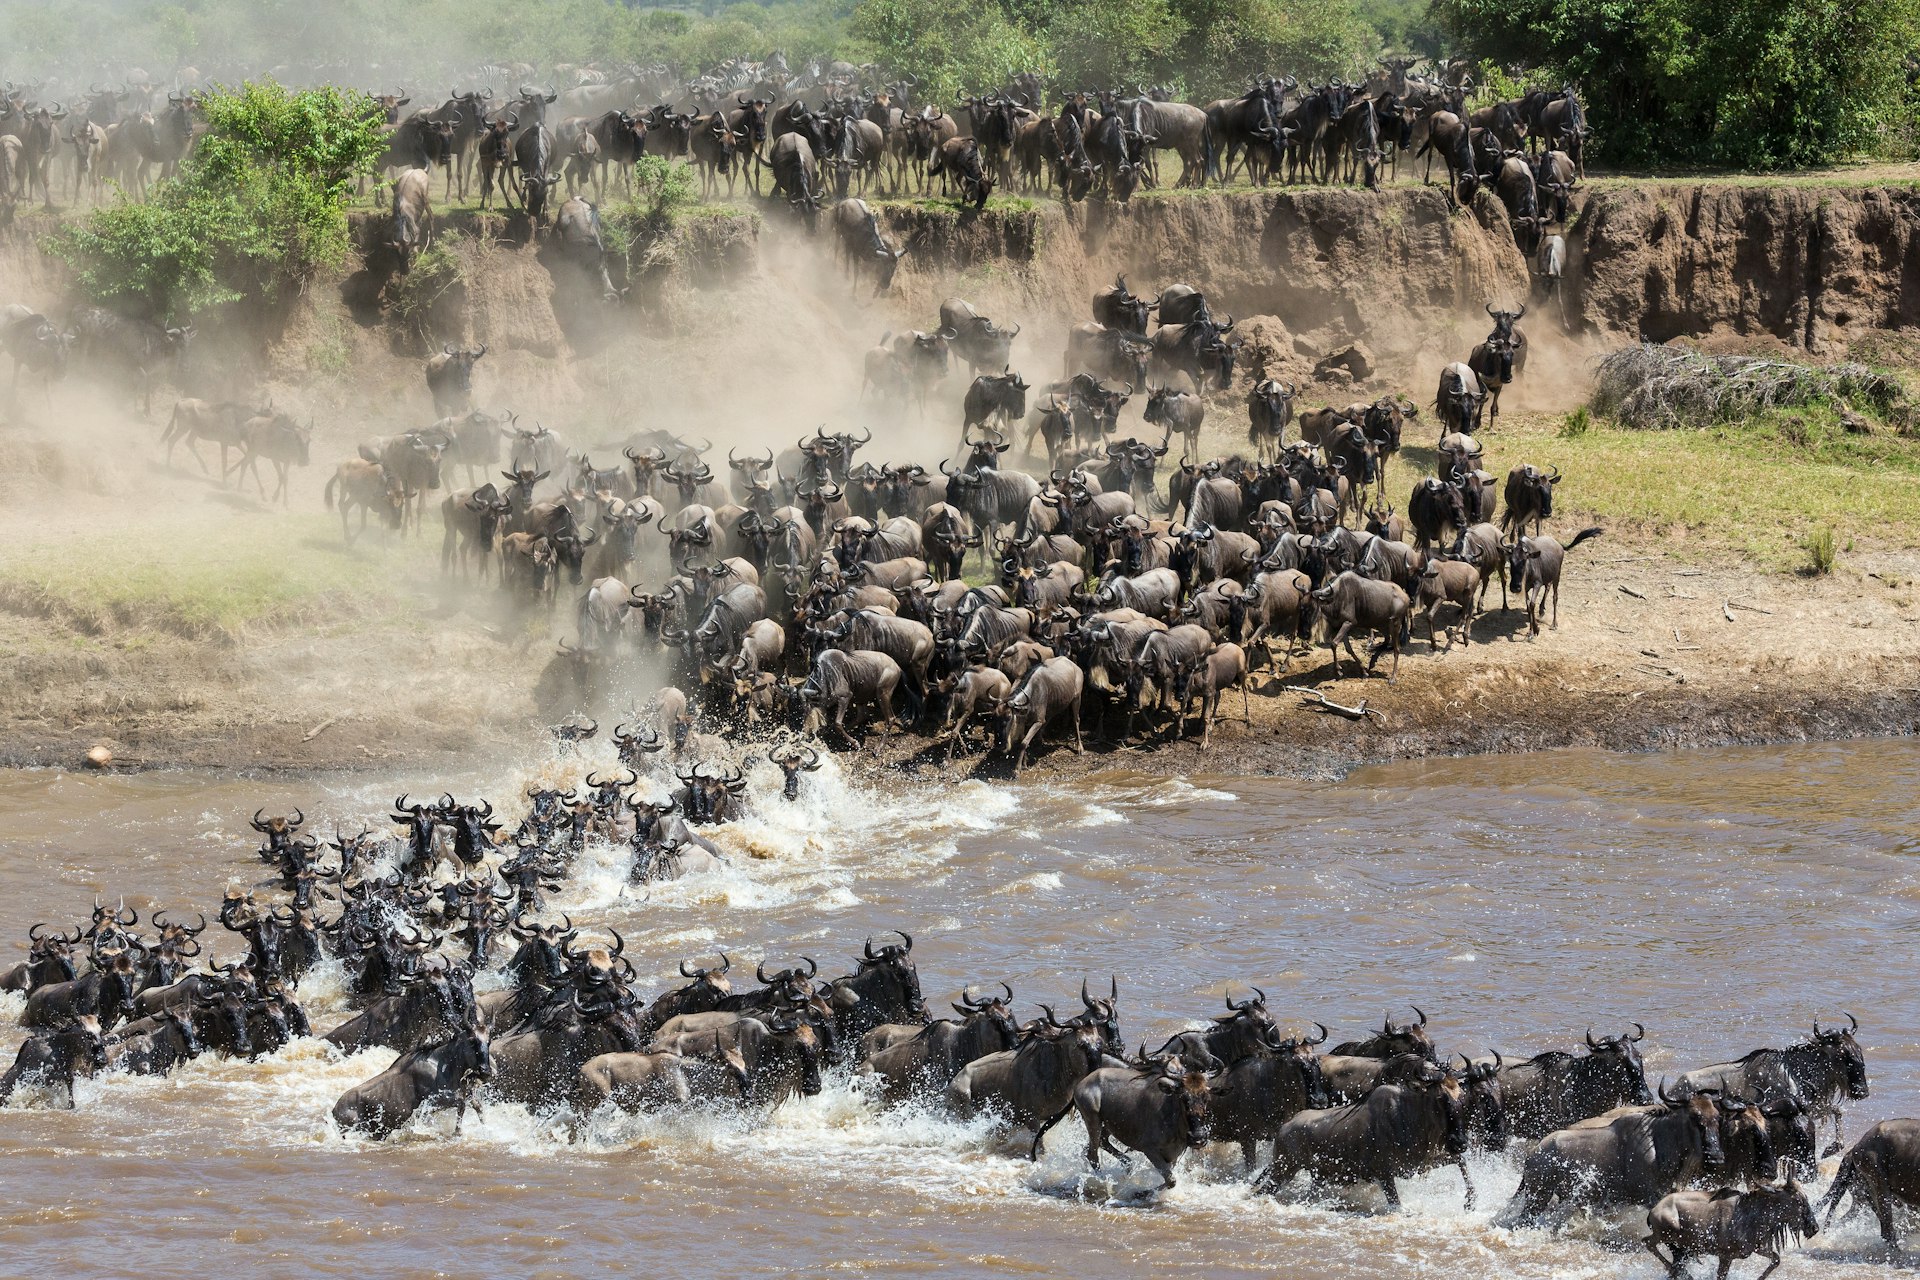 Annual Great Migration at the Serengeti, Tanzania.